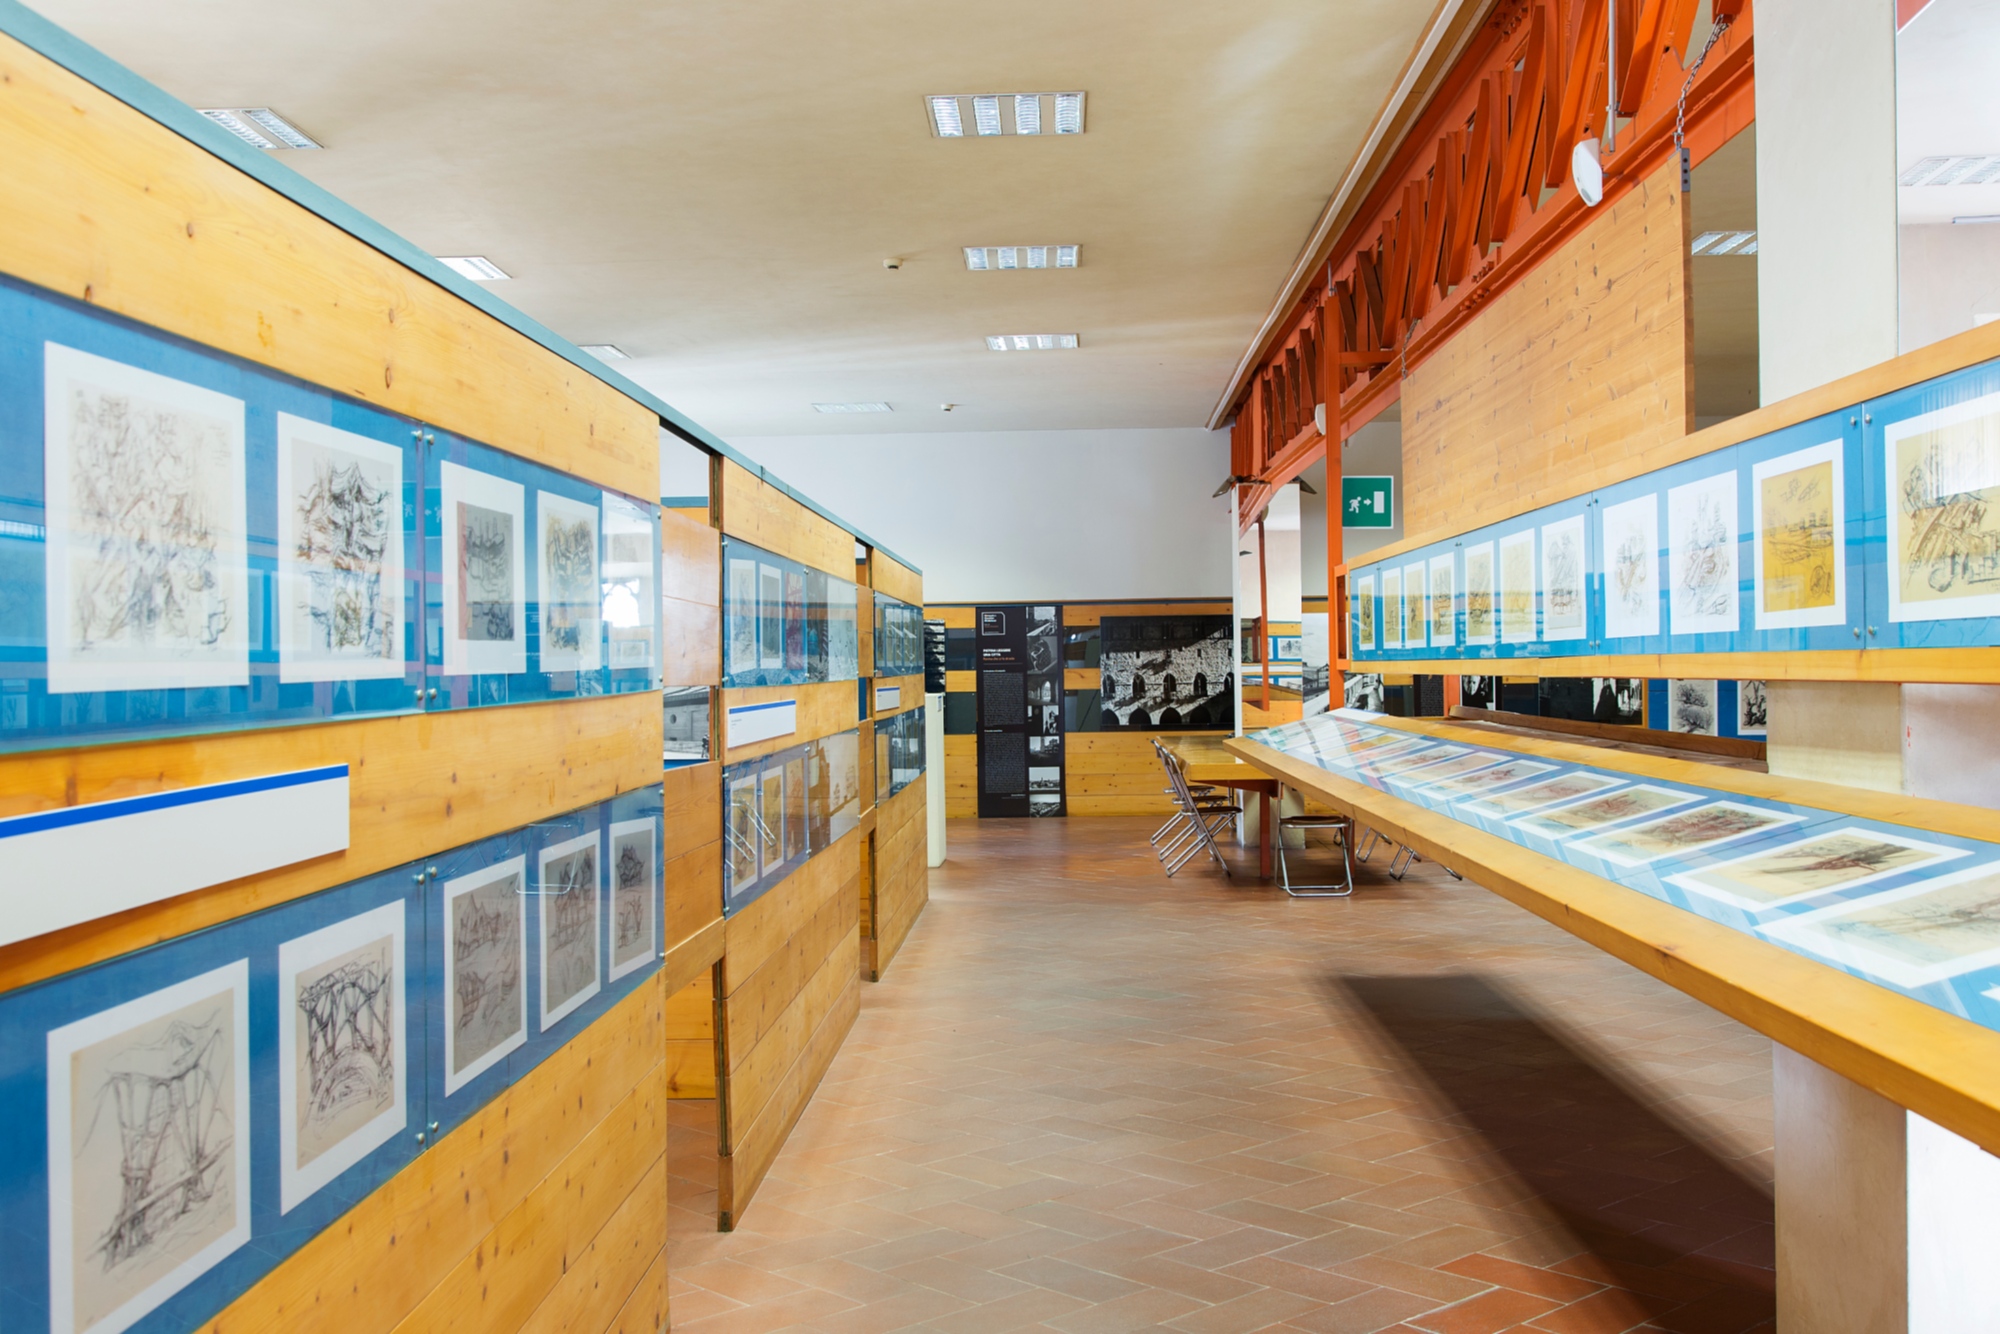 Centro di Documentazione Giovanni Michelucci in Pistoia